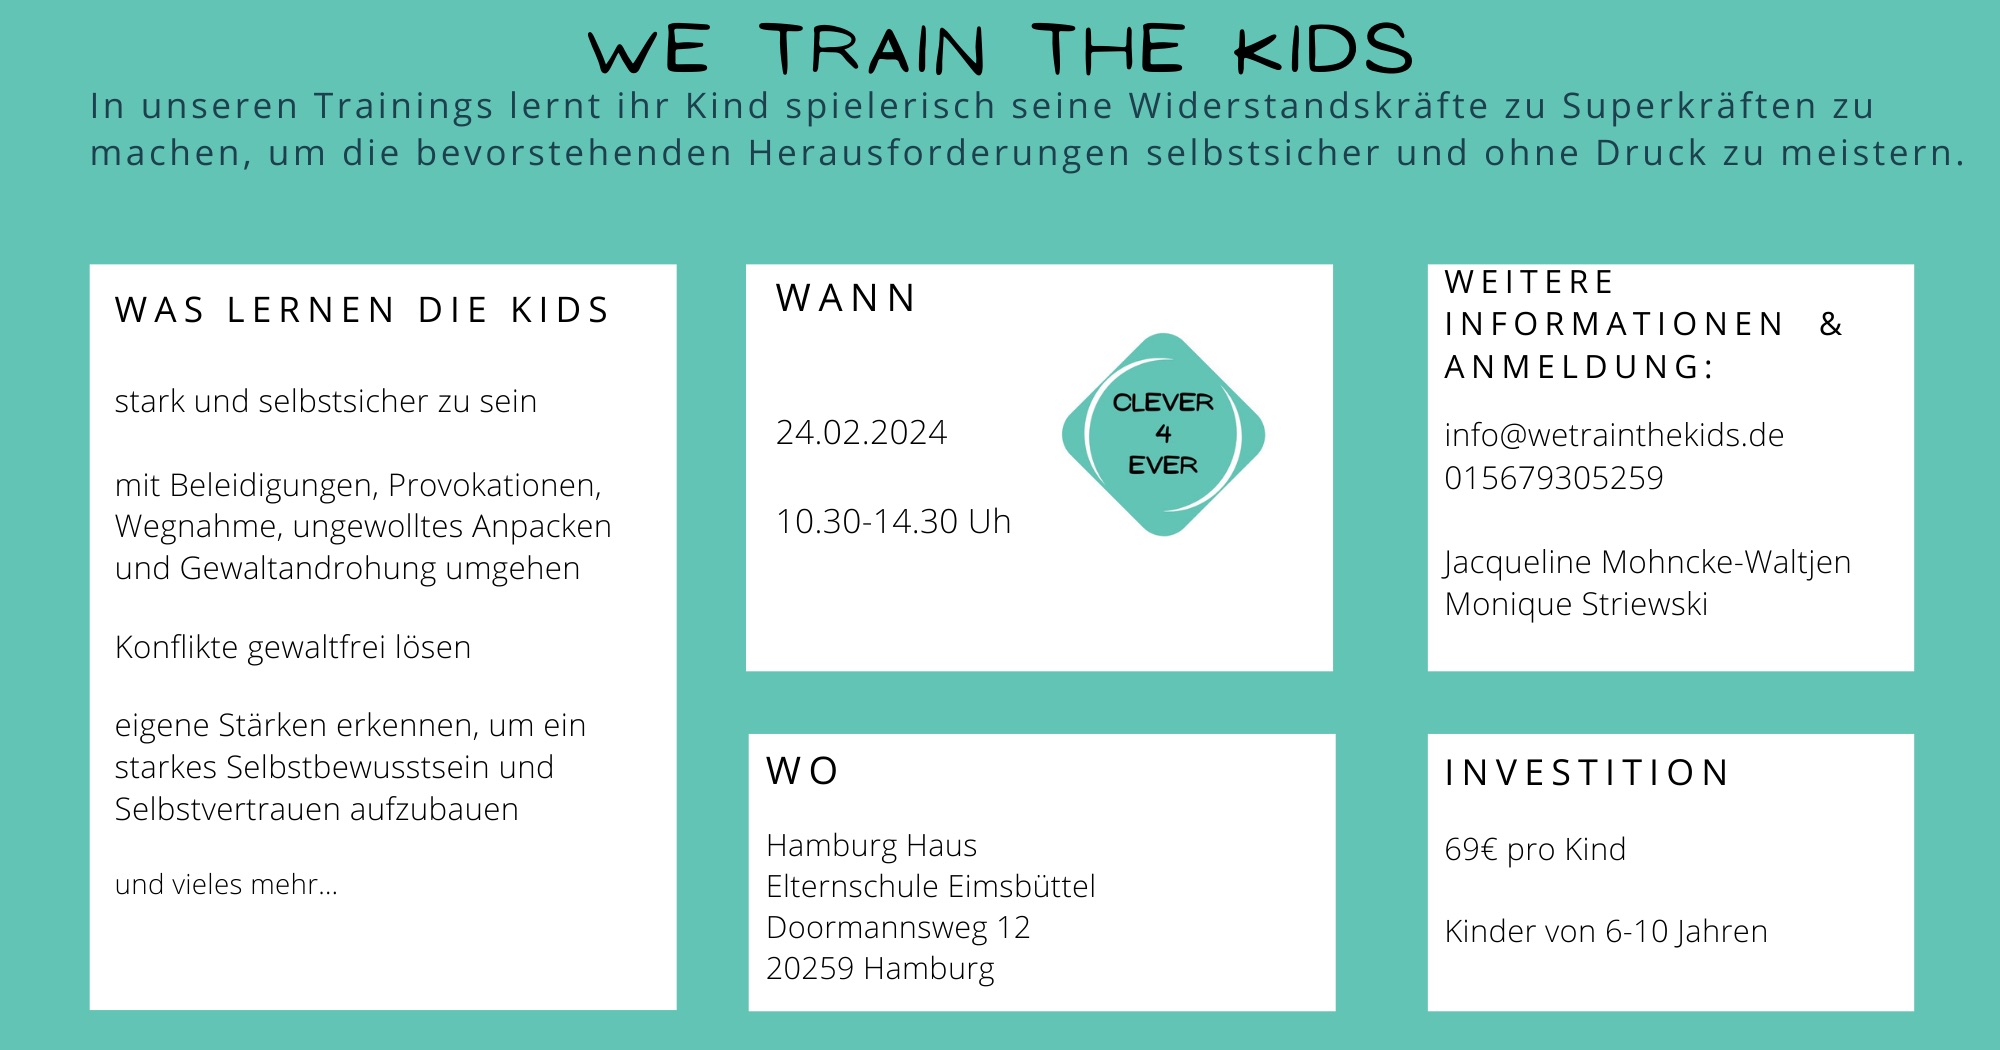 We train the kids Selbstsicher und stark im Leben - clever4ever - Termin 24.02.2024 - www.elternschule-eimsbuettel.de